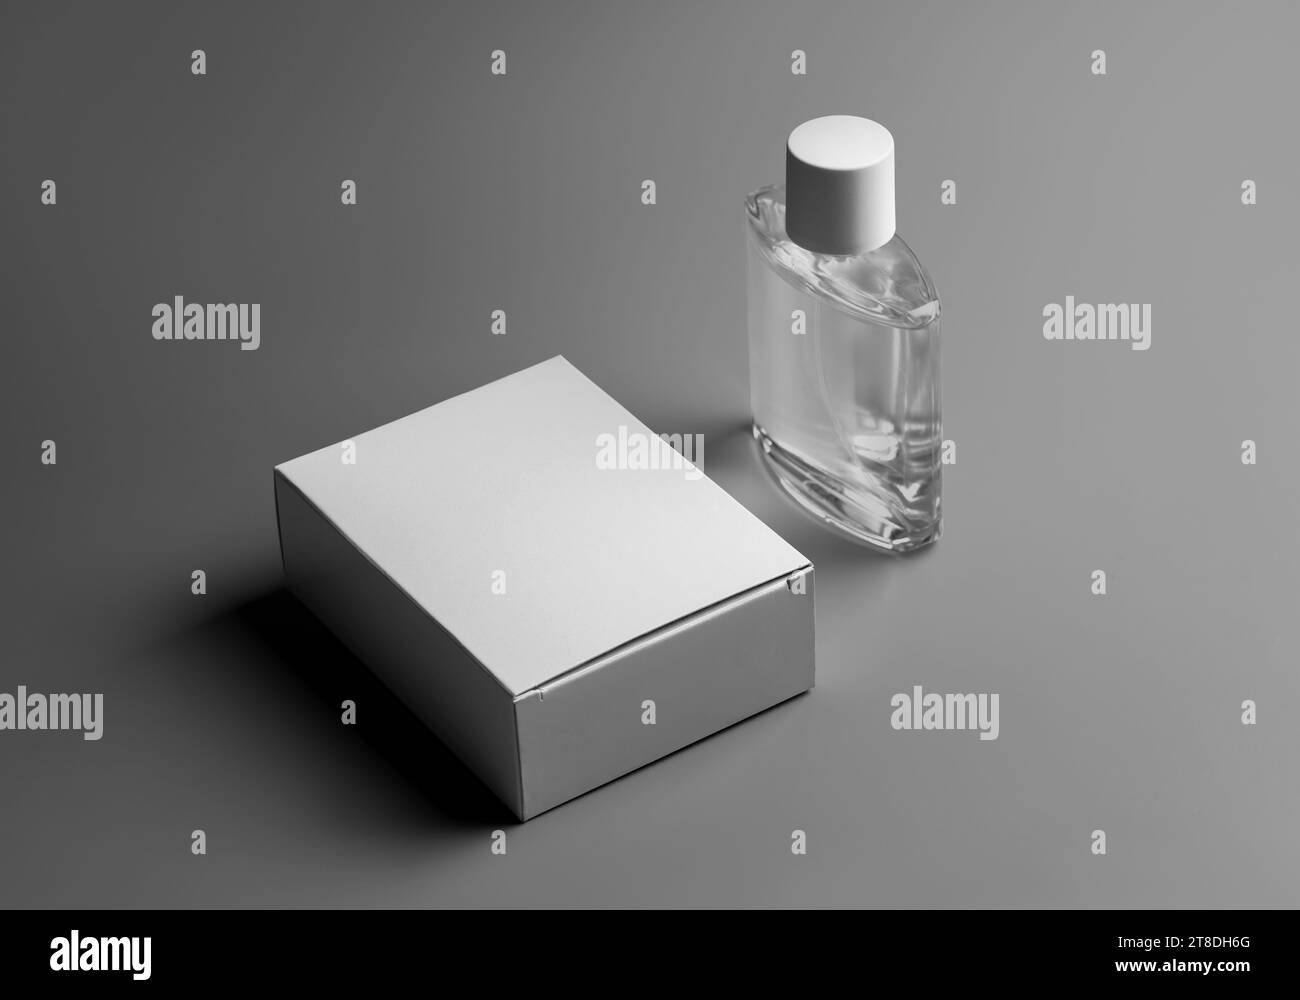 Modello di scatola bianca e bottiglia trasparente per profumo, presentazione per design, branding, pubblicità. Modello per confezioni eleganti di lusso f Foto Stock